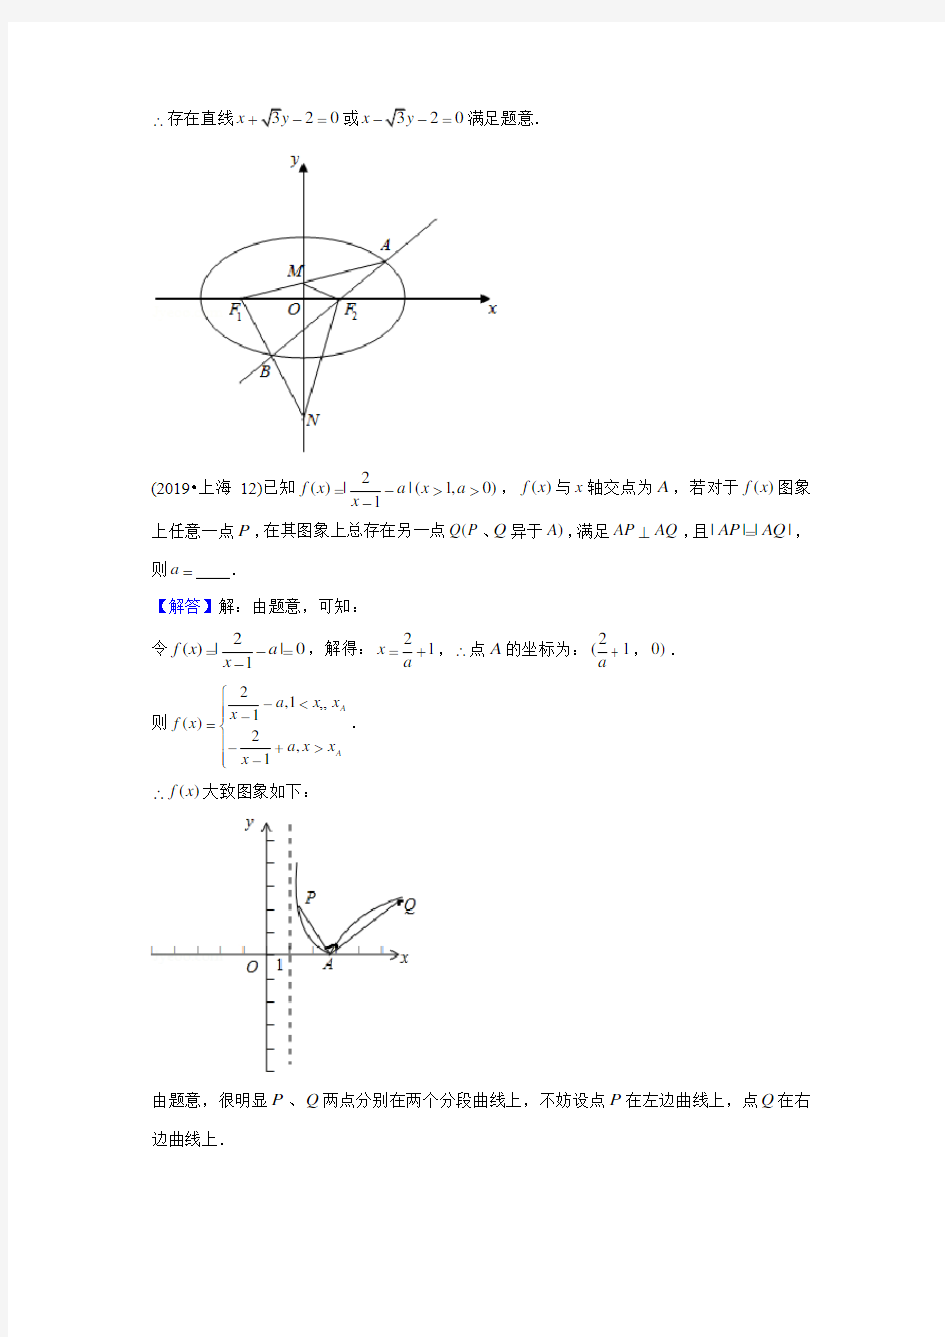 2019高考数学圆锥曲线与方程真题汇总(一题不拉)